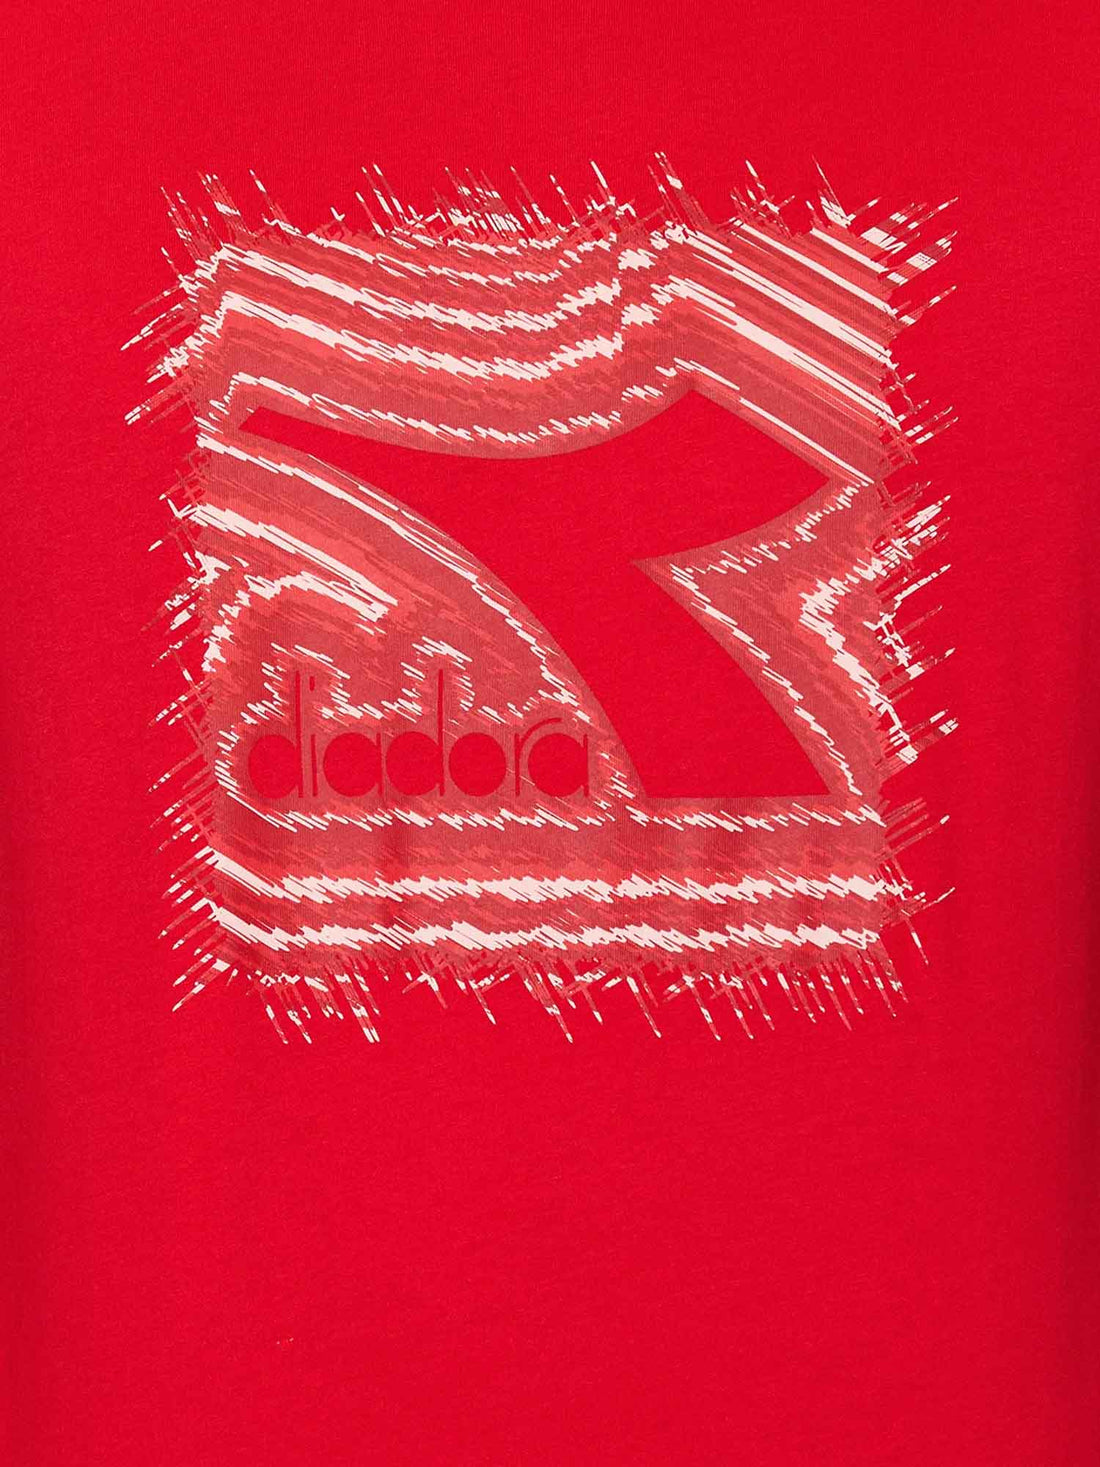 T-shirt Rosso Diadora